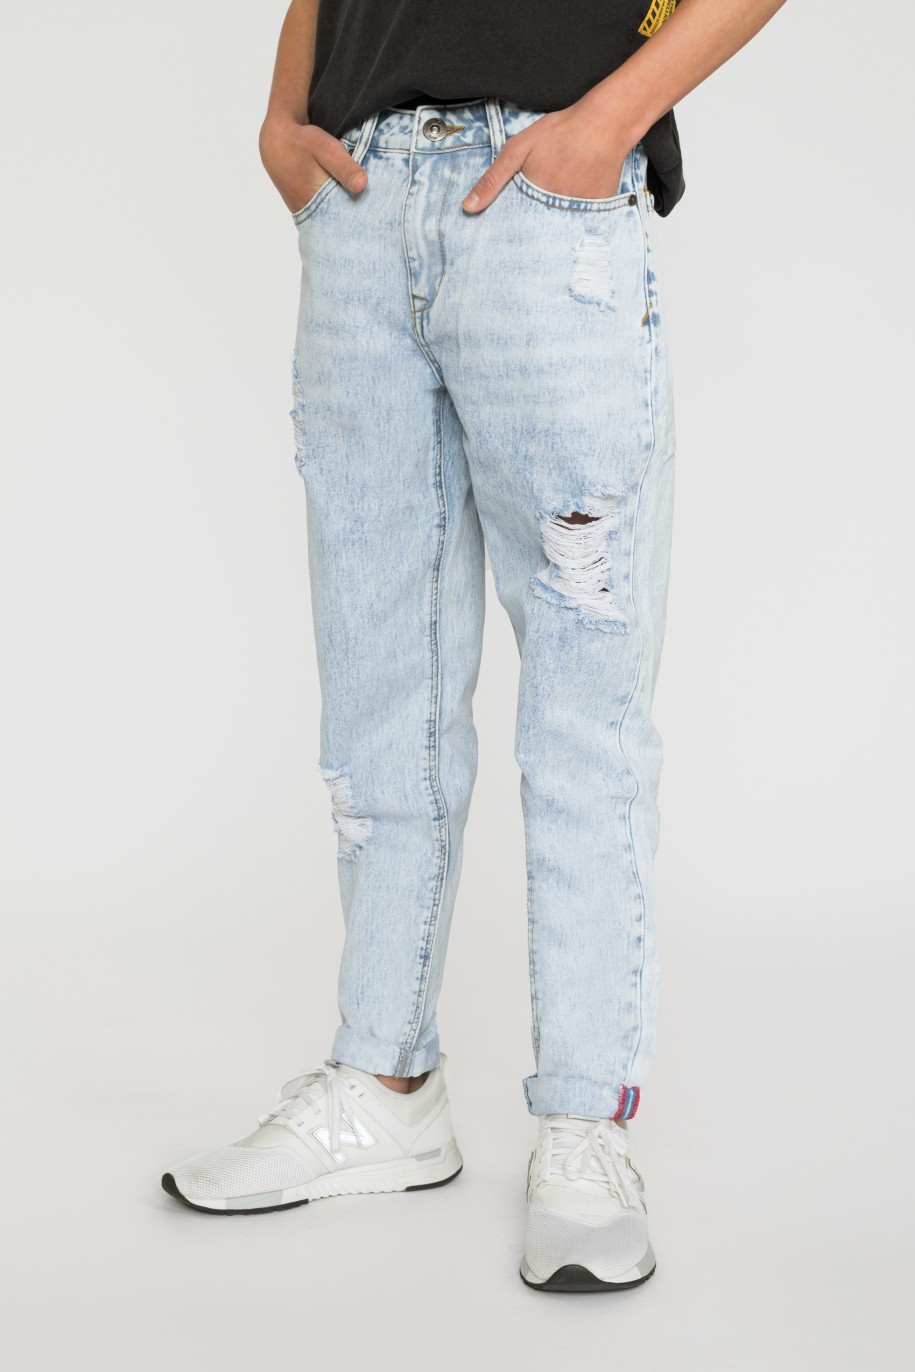 Jasne jeansowe spodnie dla chłopaka z przetarciami - 33190